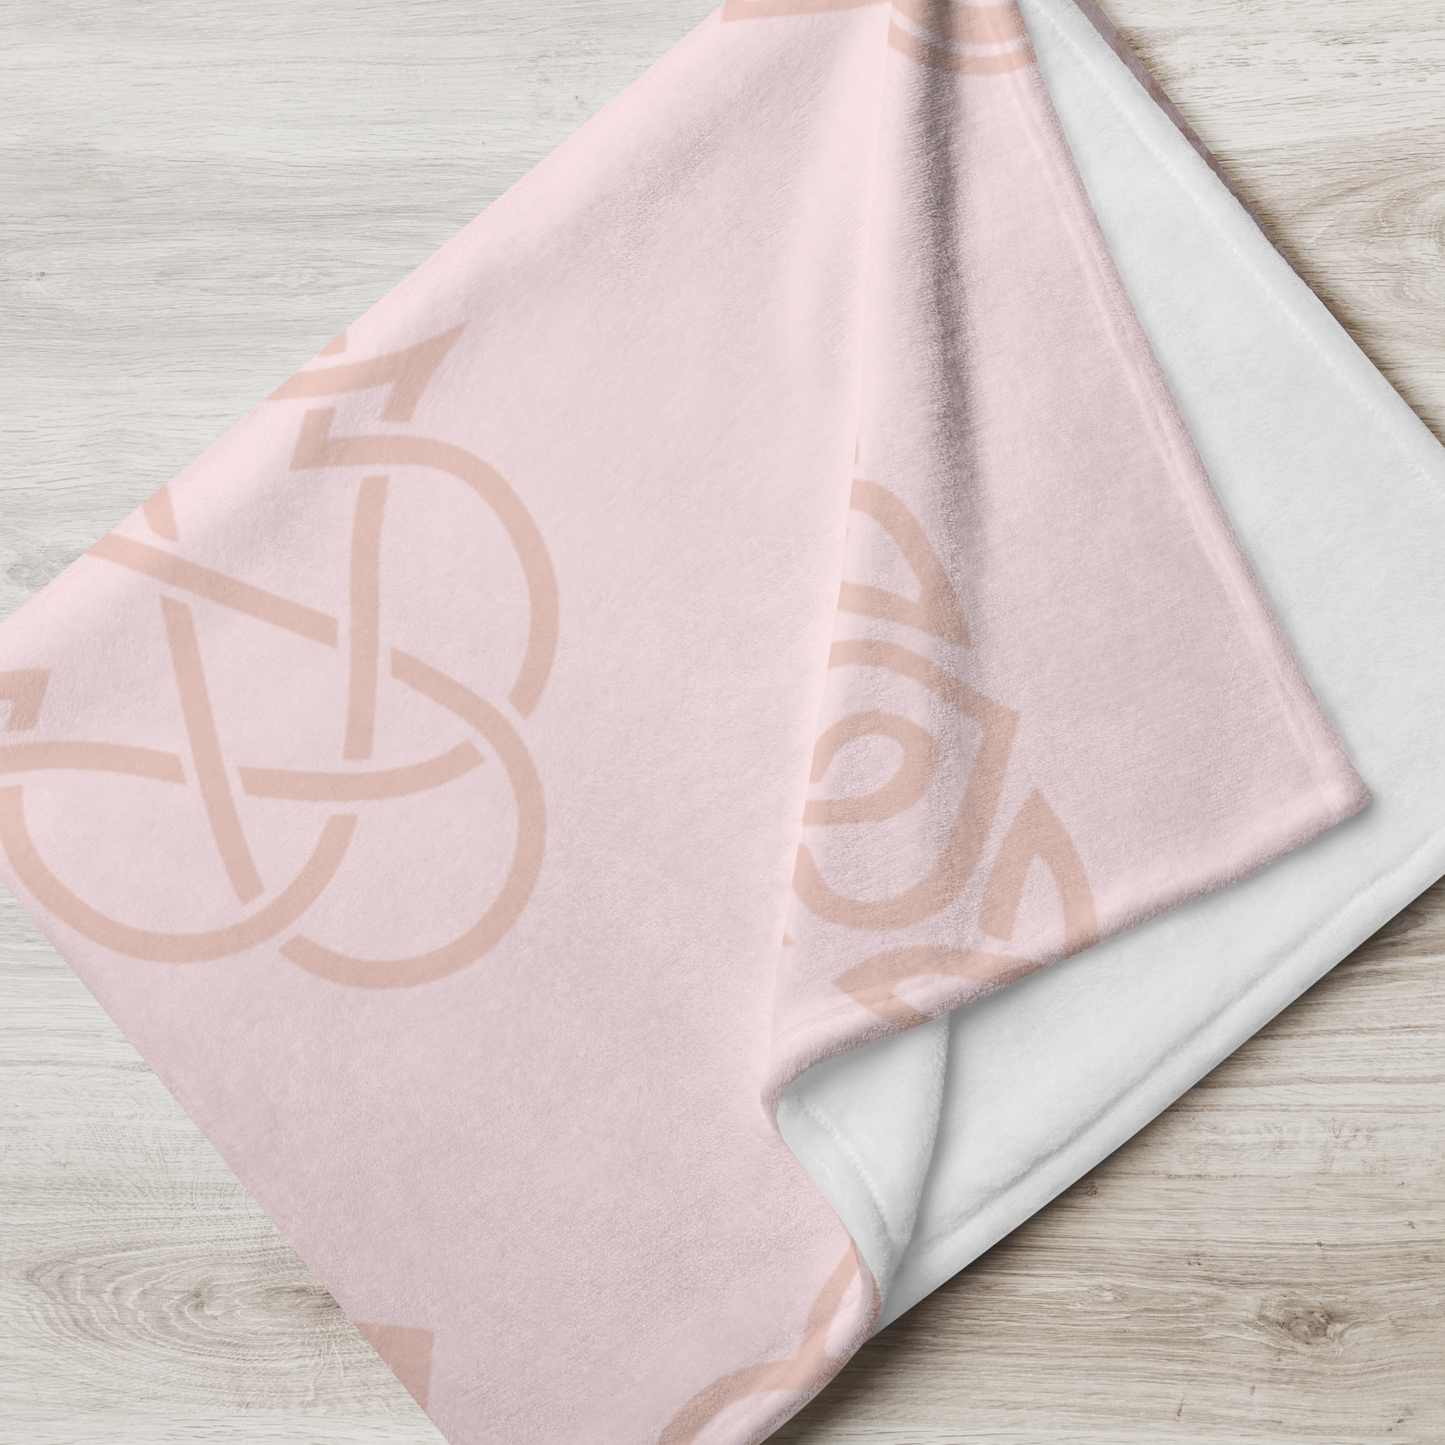 Celtic Knot Pink Heart Blanket